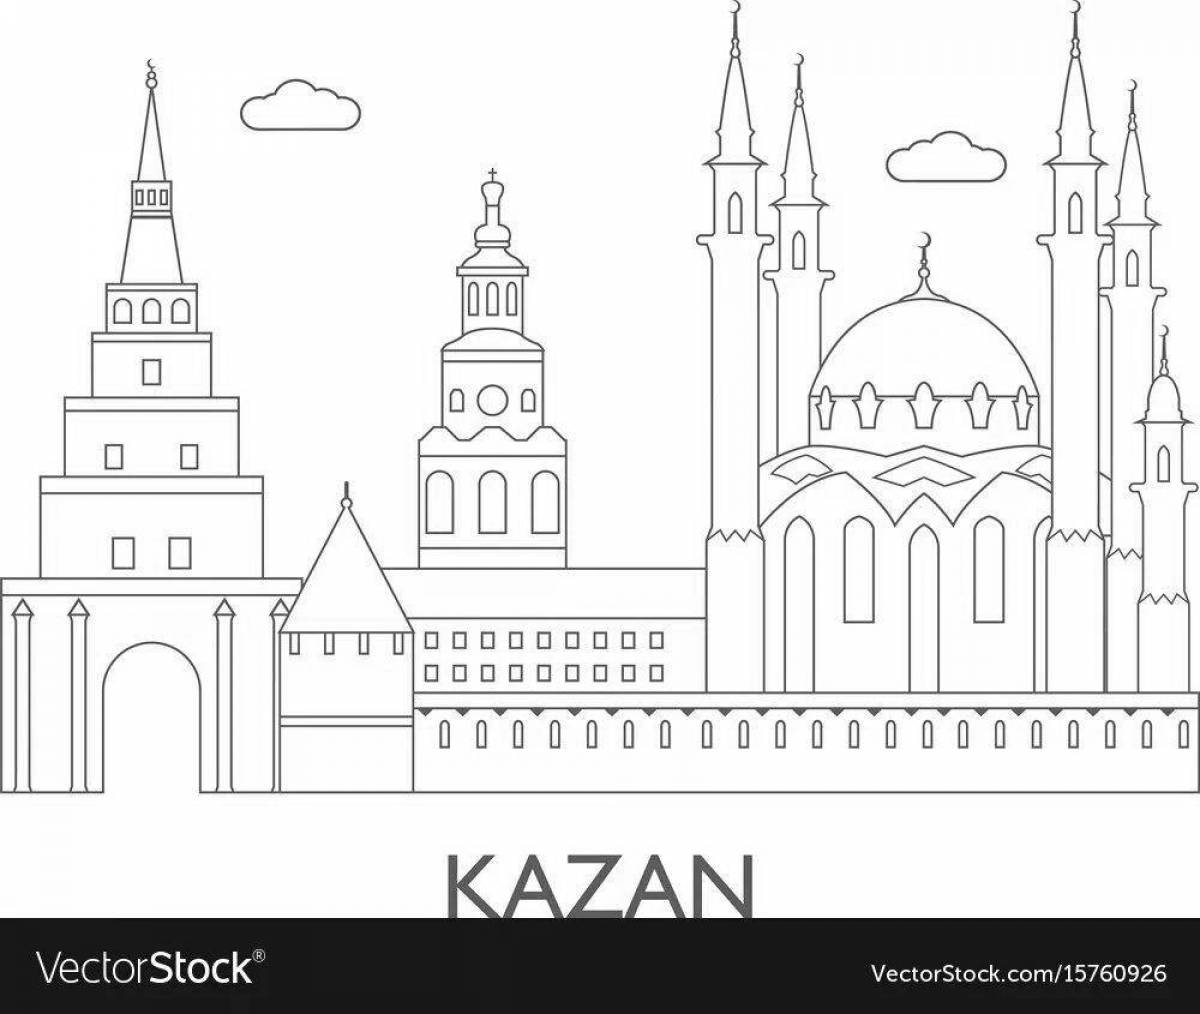 Shining Kazan coloring book for babies